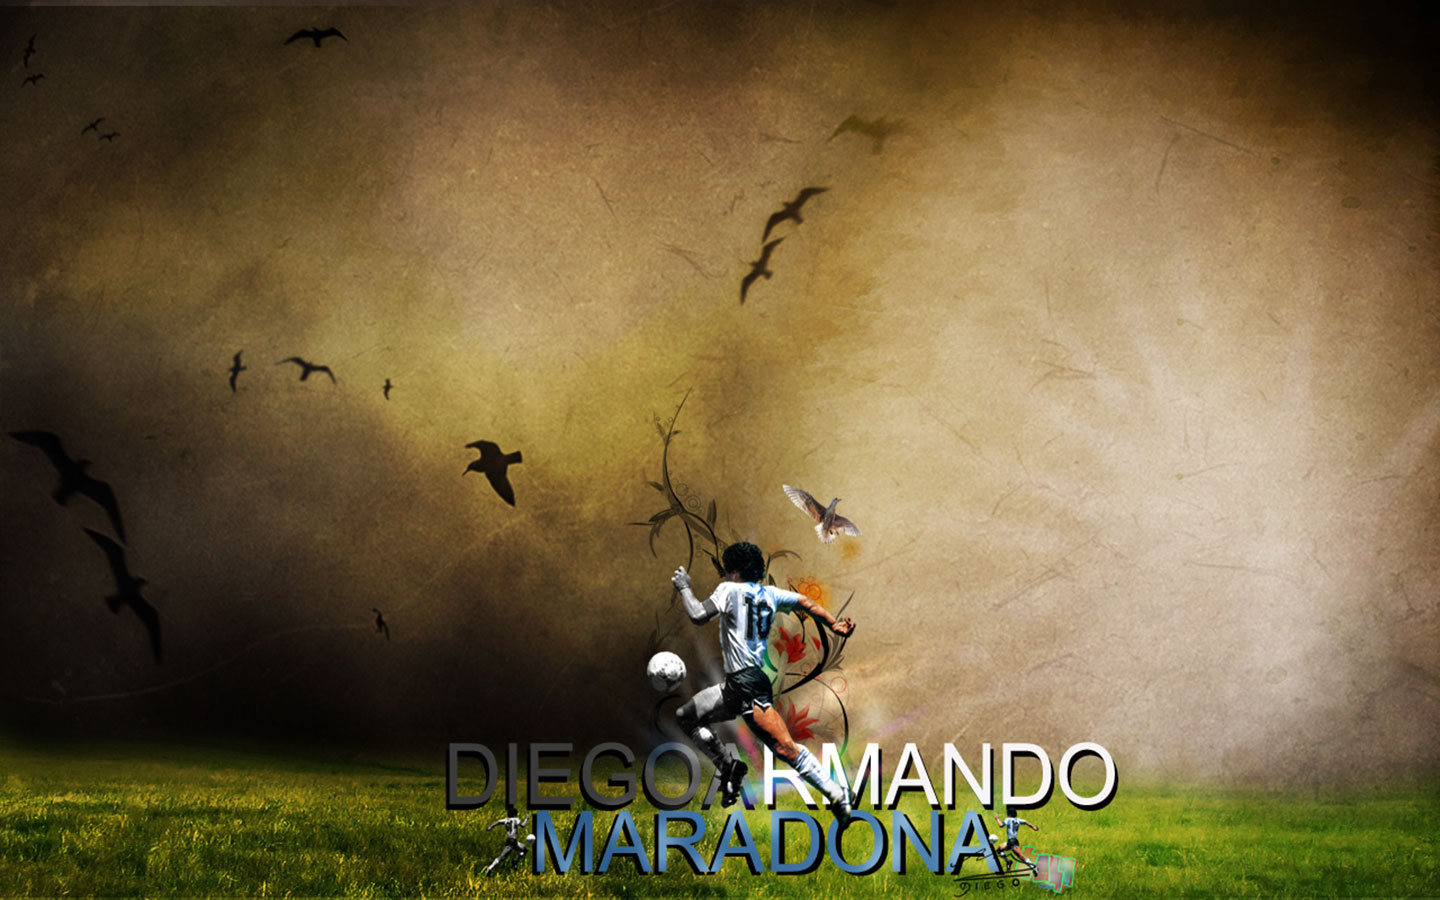 Descargar fondos de escritorio de Diego Armando Maradona HD